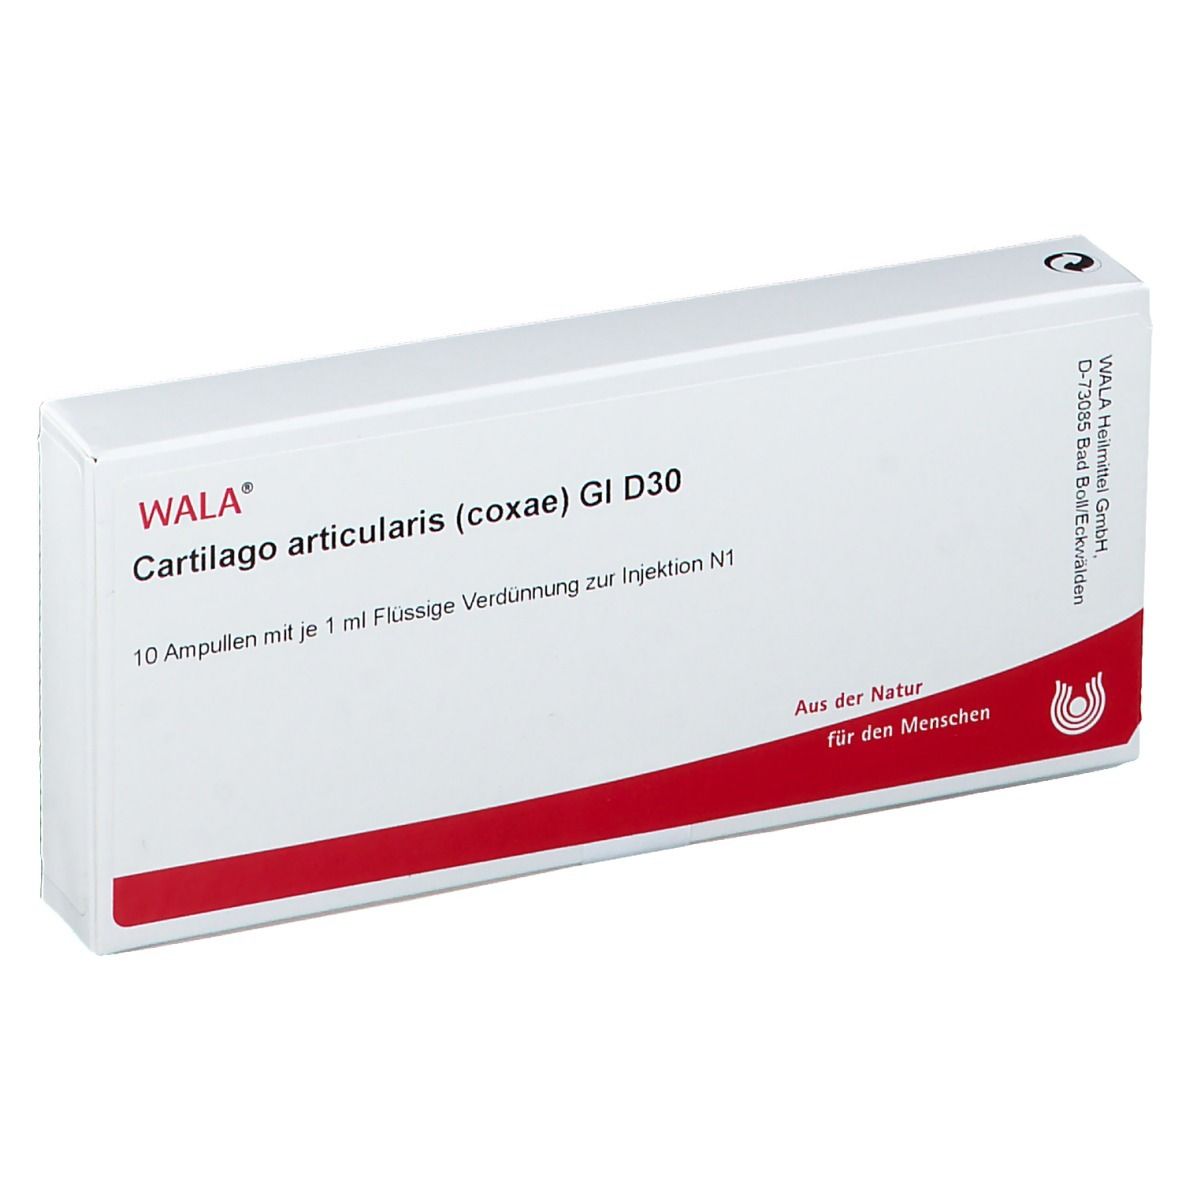 Wala® Cartilago articularis coxae Gl D 30